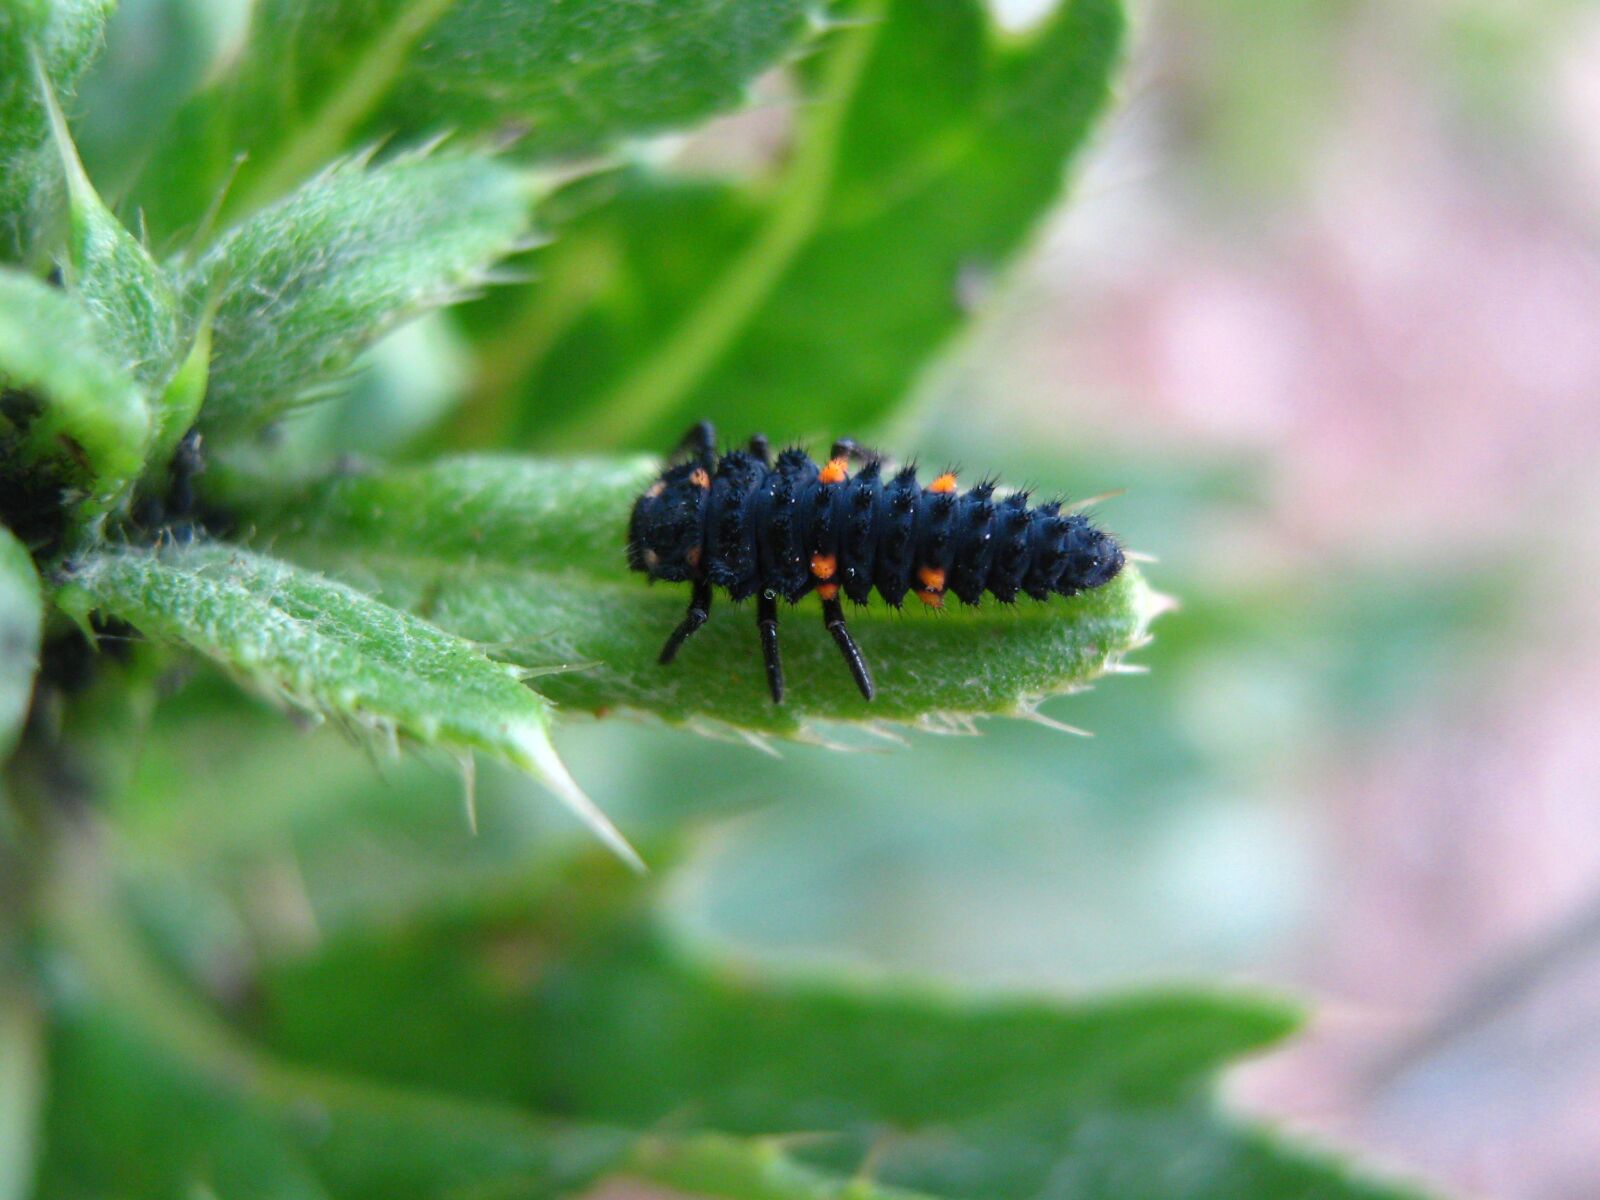 Canon PowerShot A470 sample photo. Ladybug, larva, nature photography